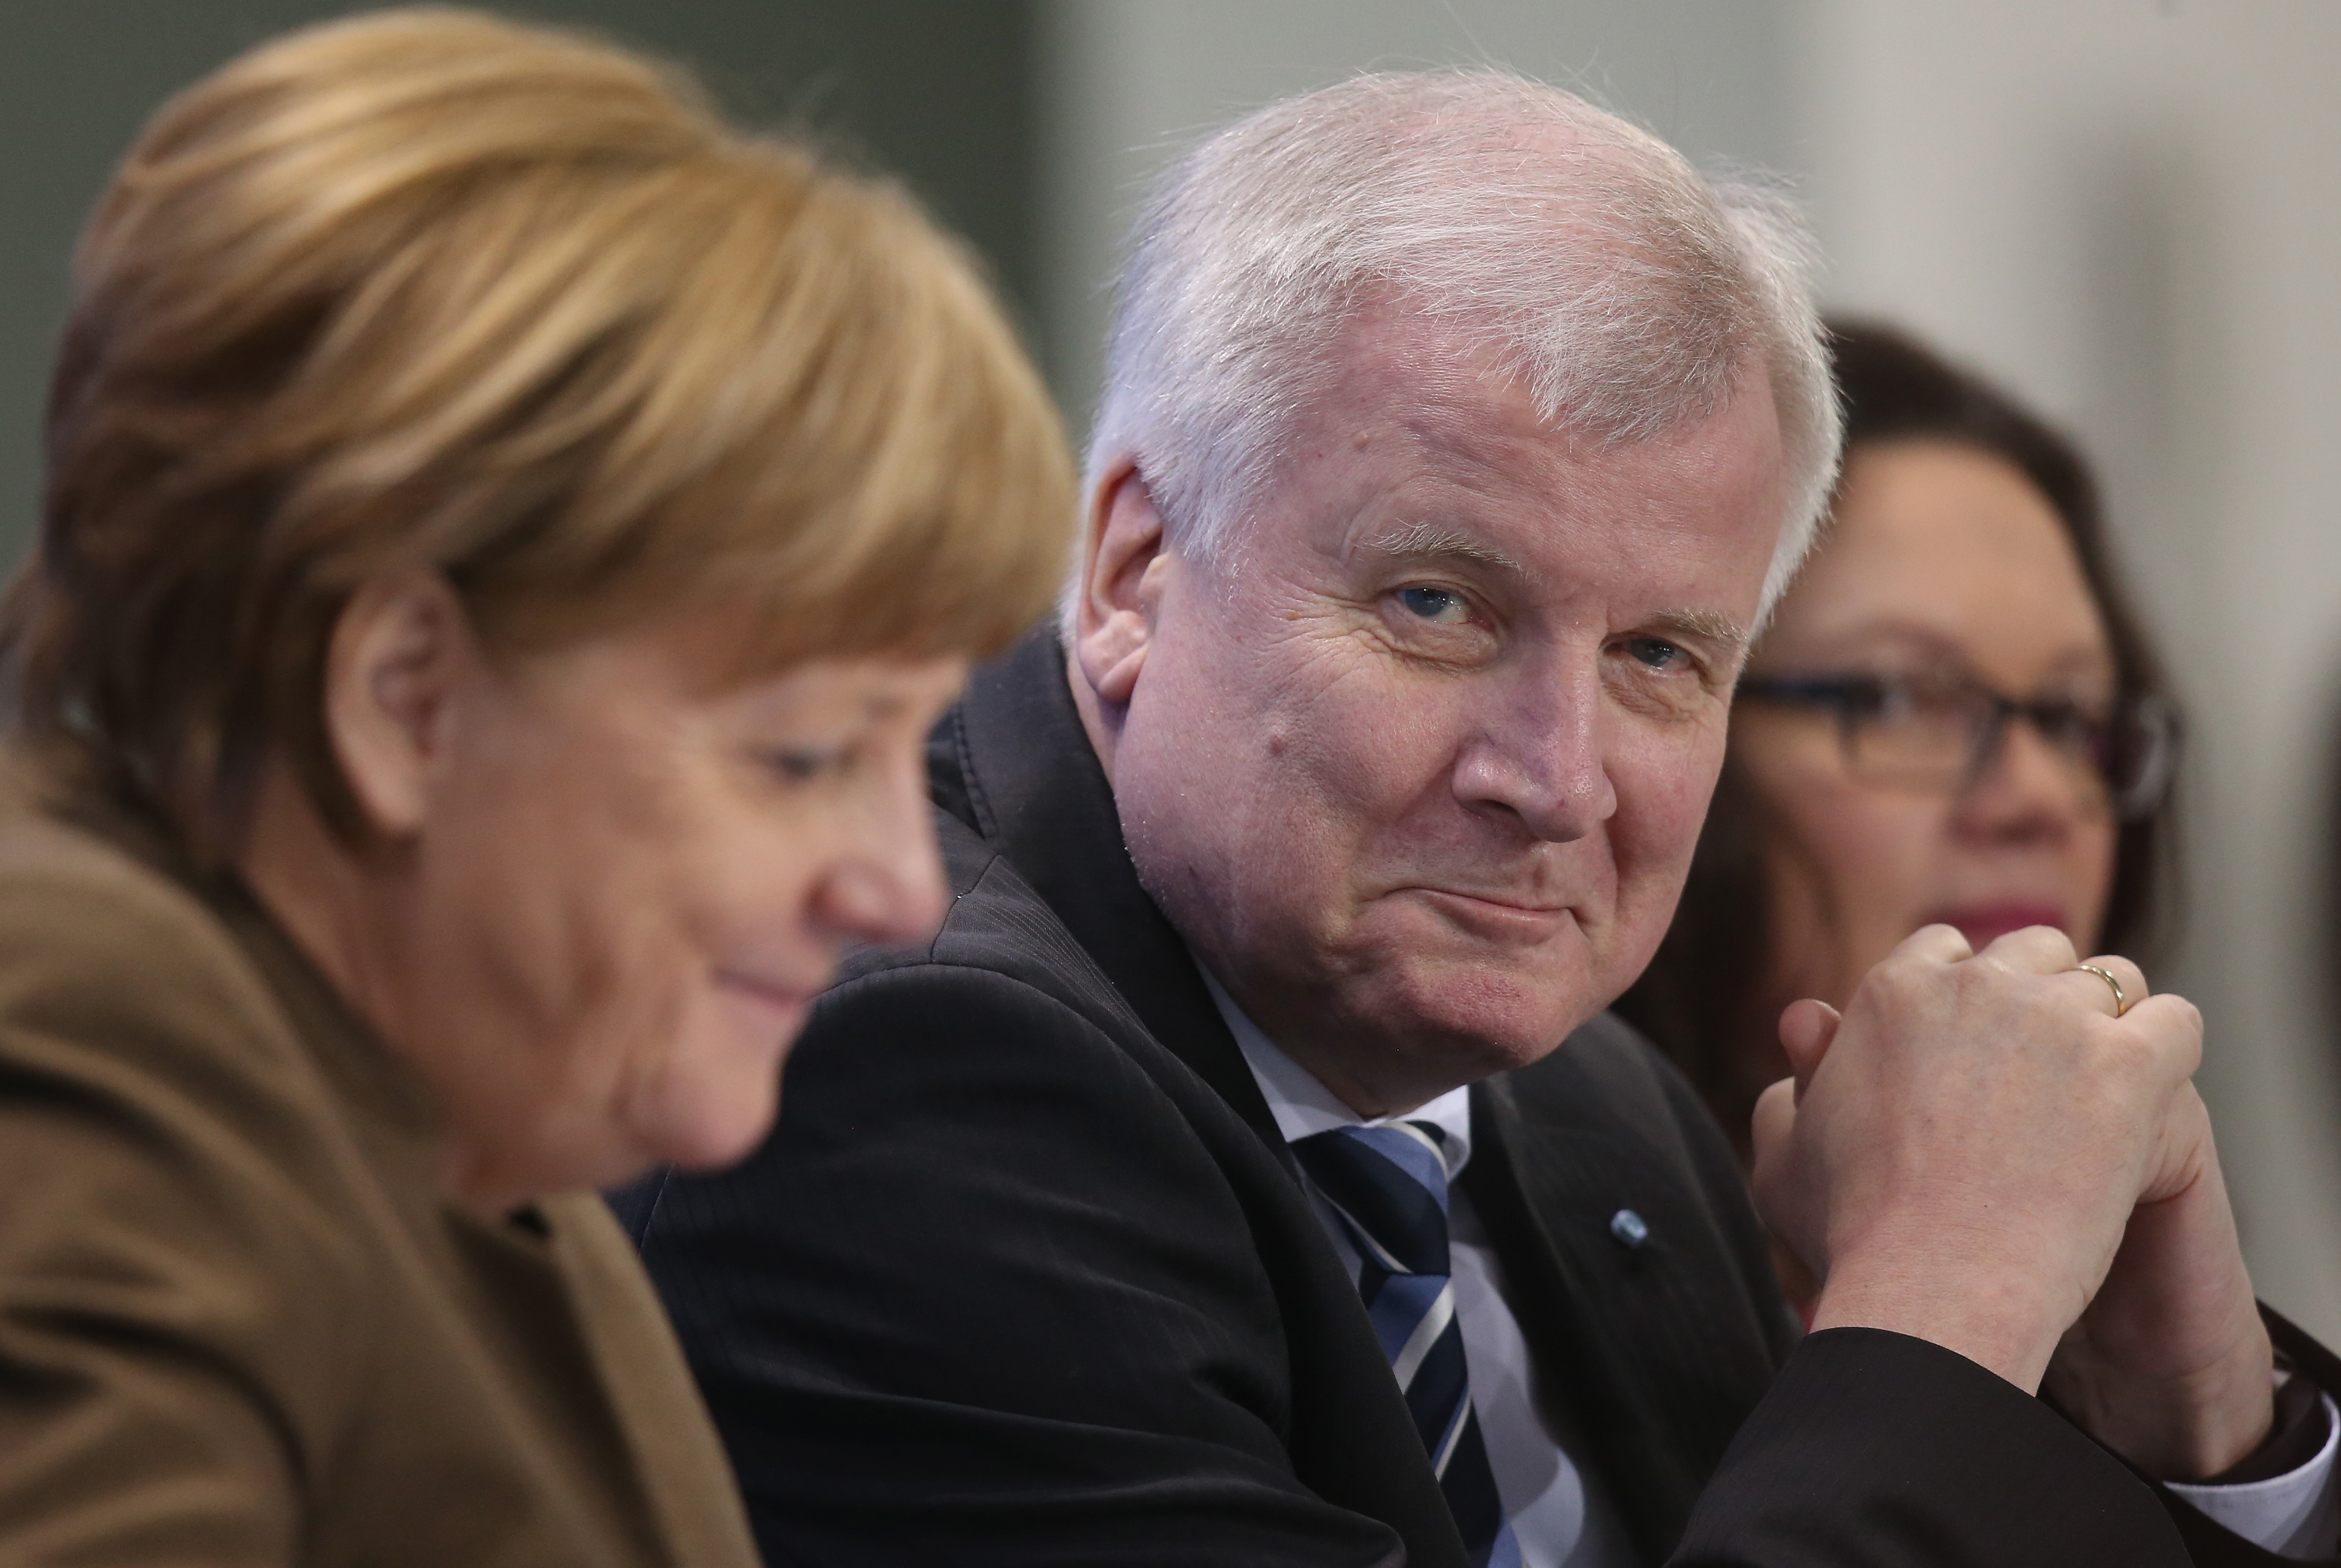 Union bereitet Wahlkampf vor: Auch CSU will Merkel küren